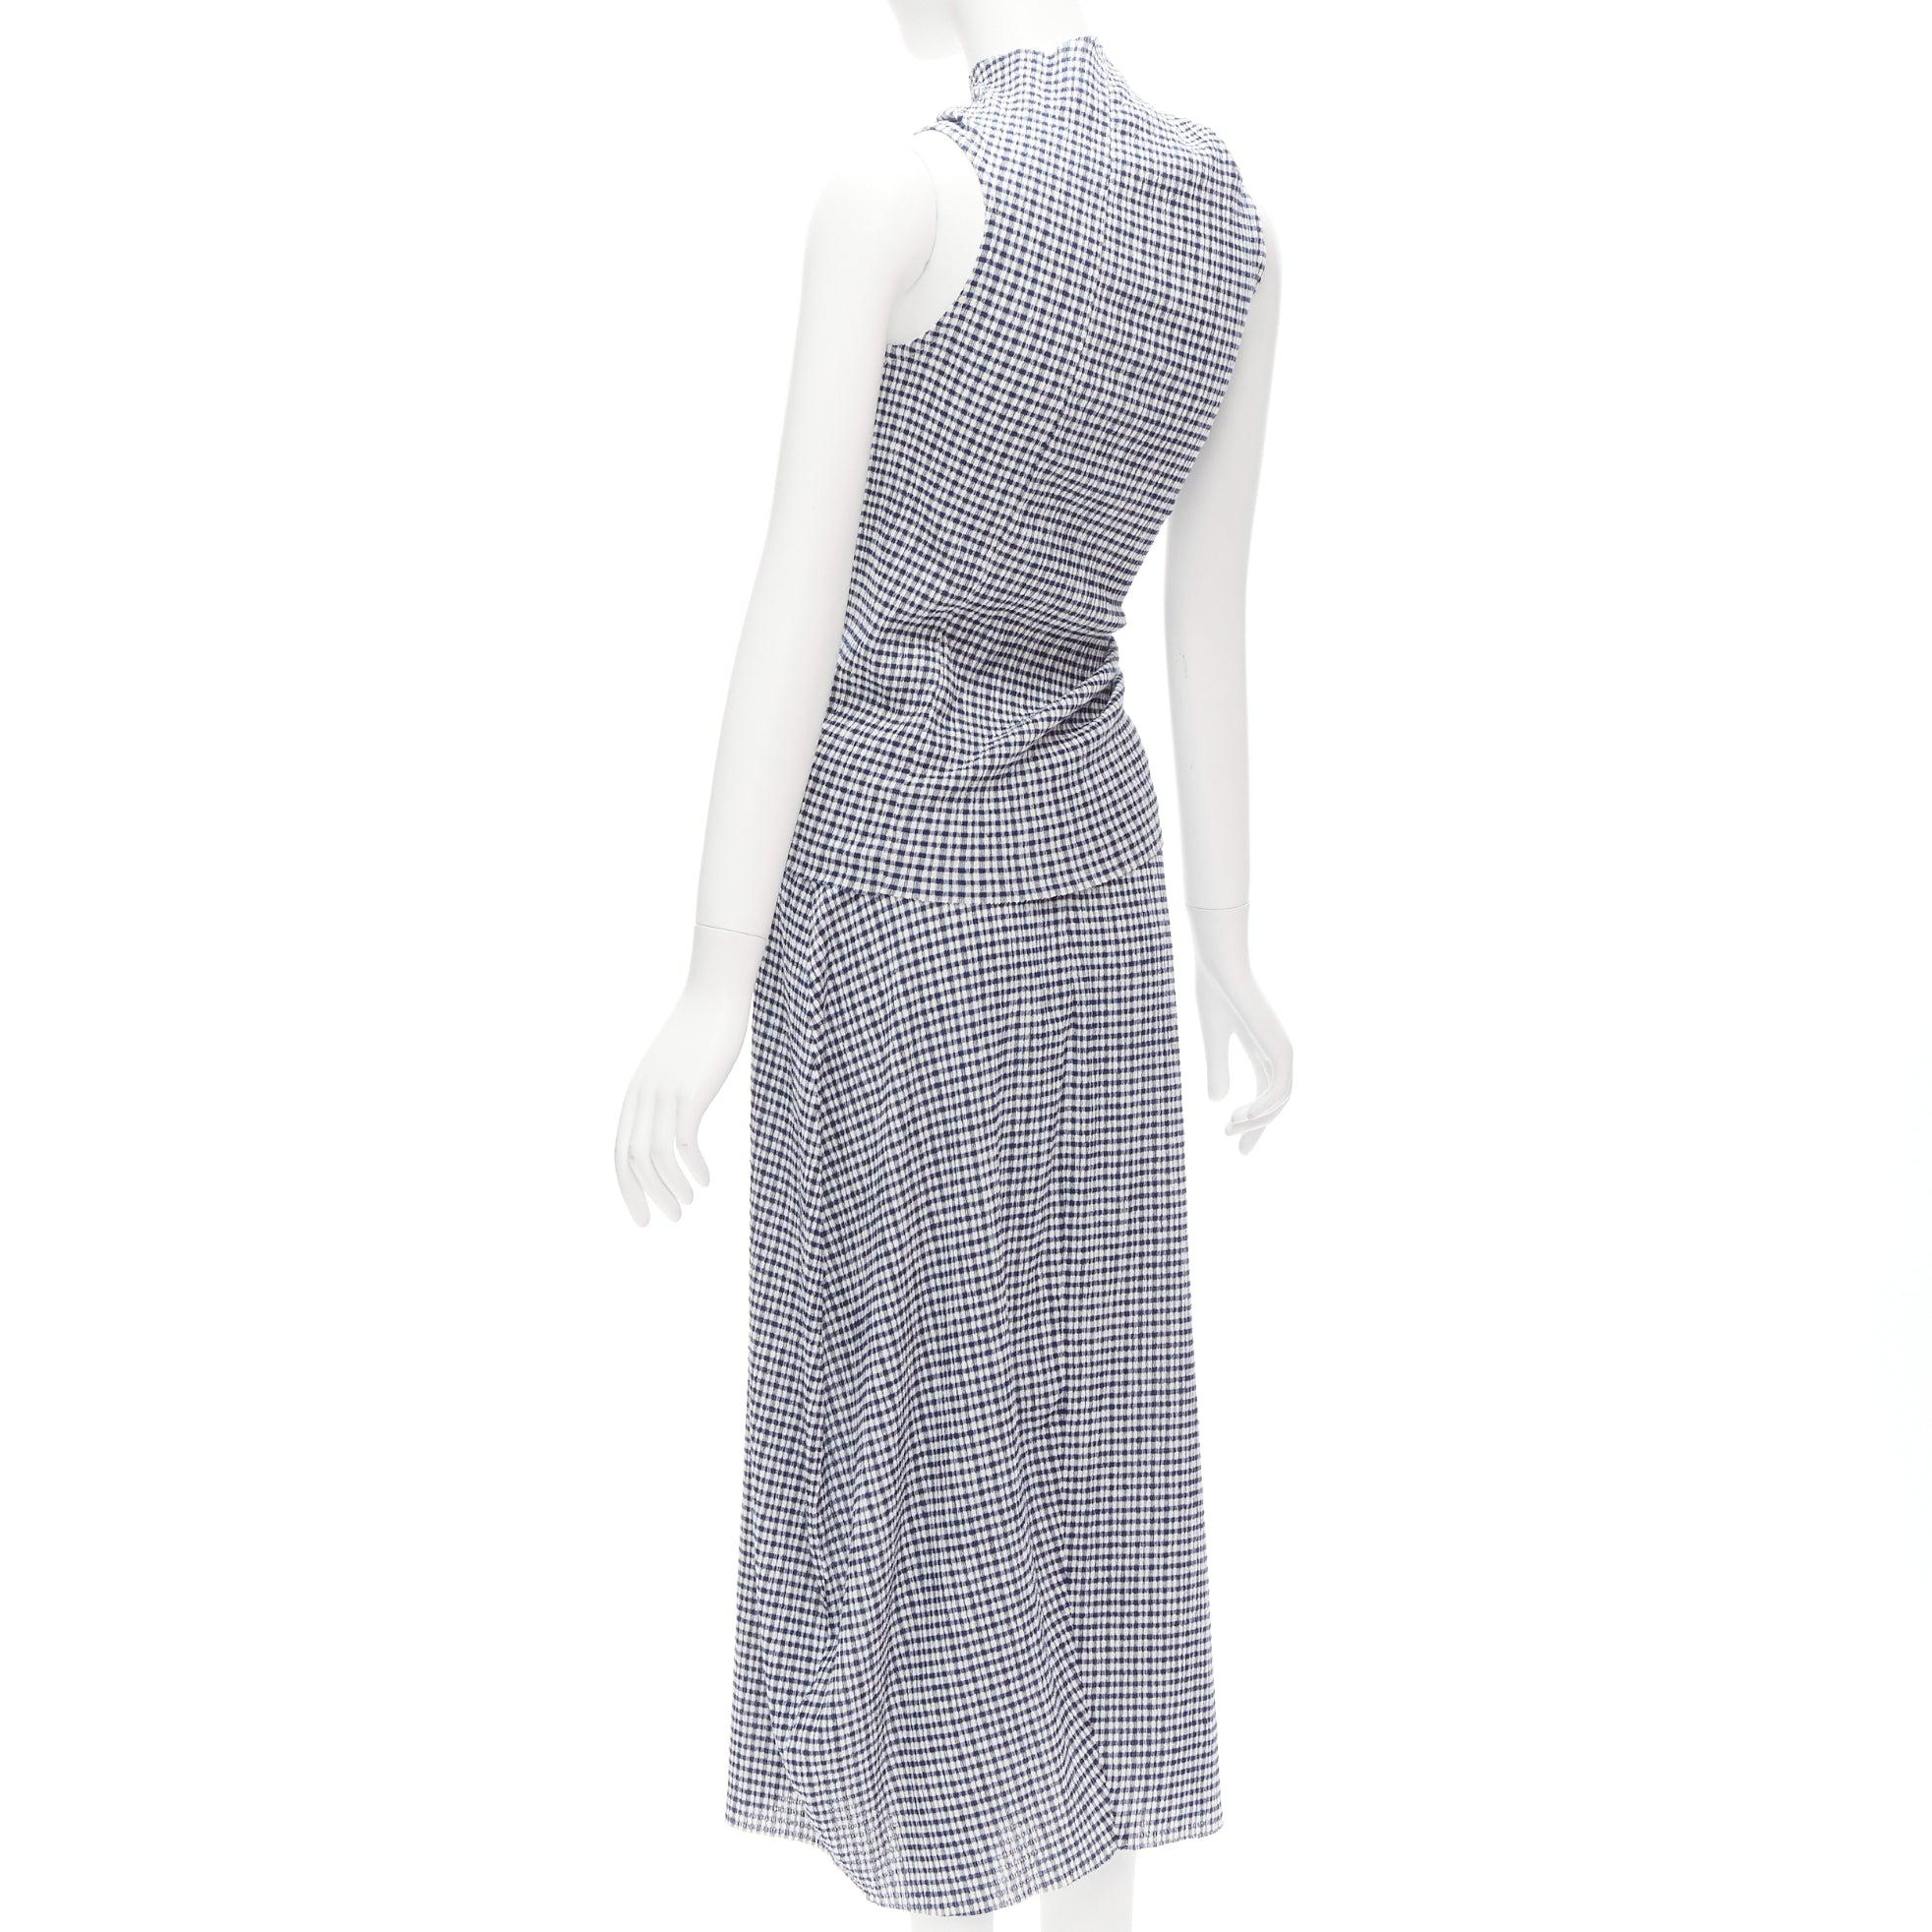 Women's JIL SANDER blue white gingham crinkled asymmetric top skirt set FR34 XS